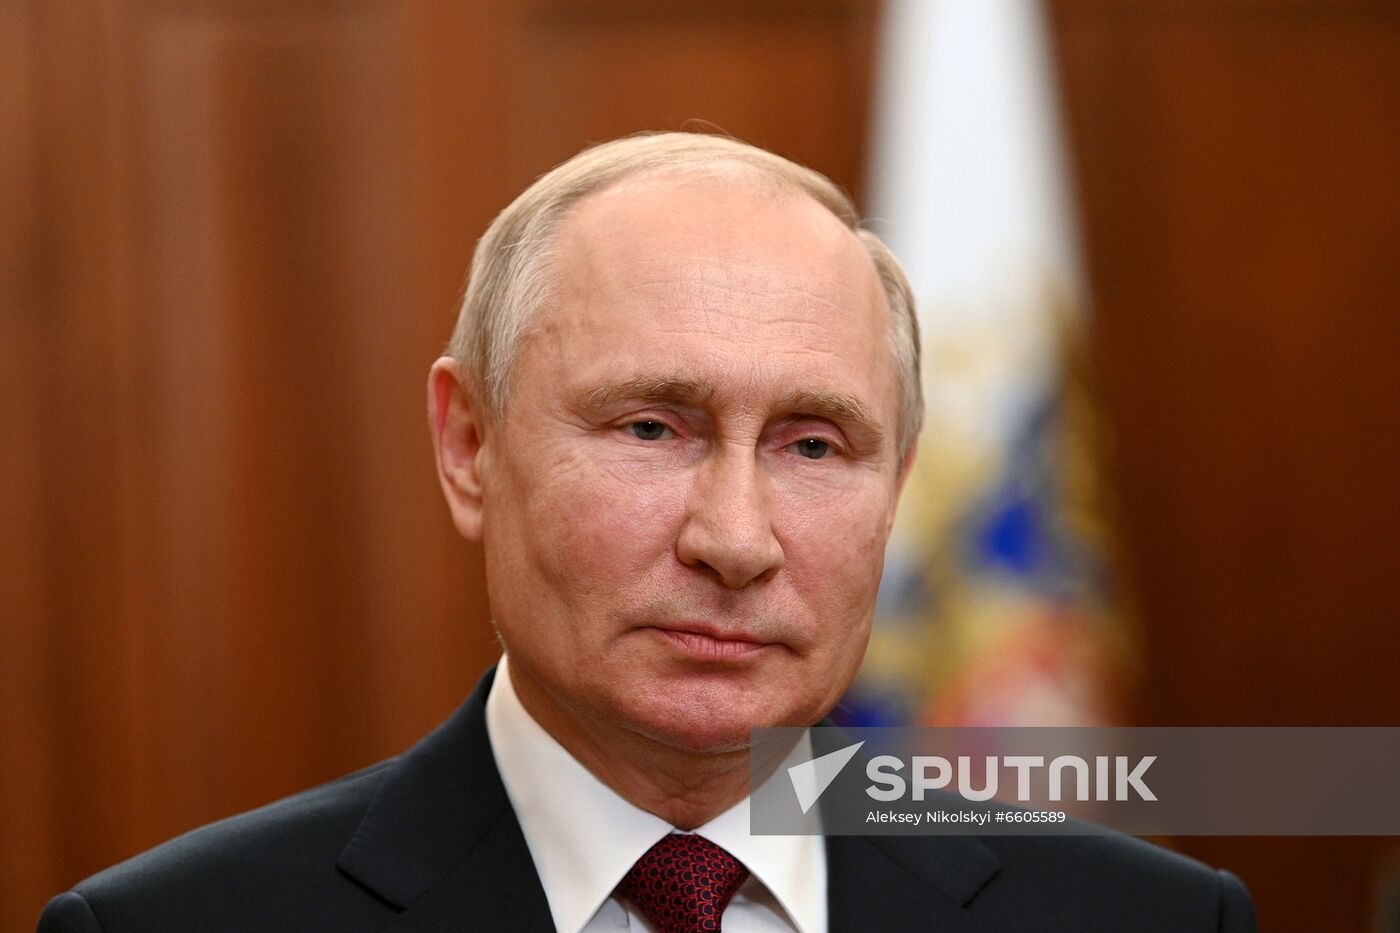 Russia Putin Investigator Day